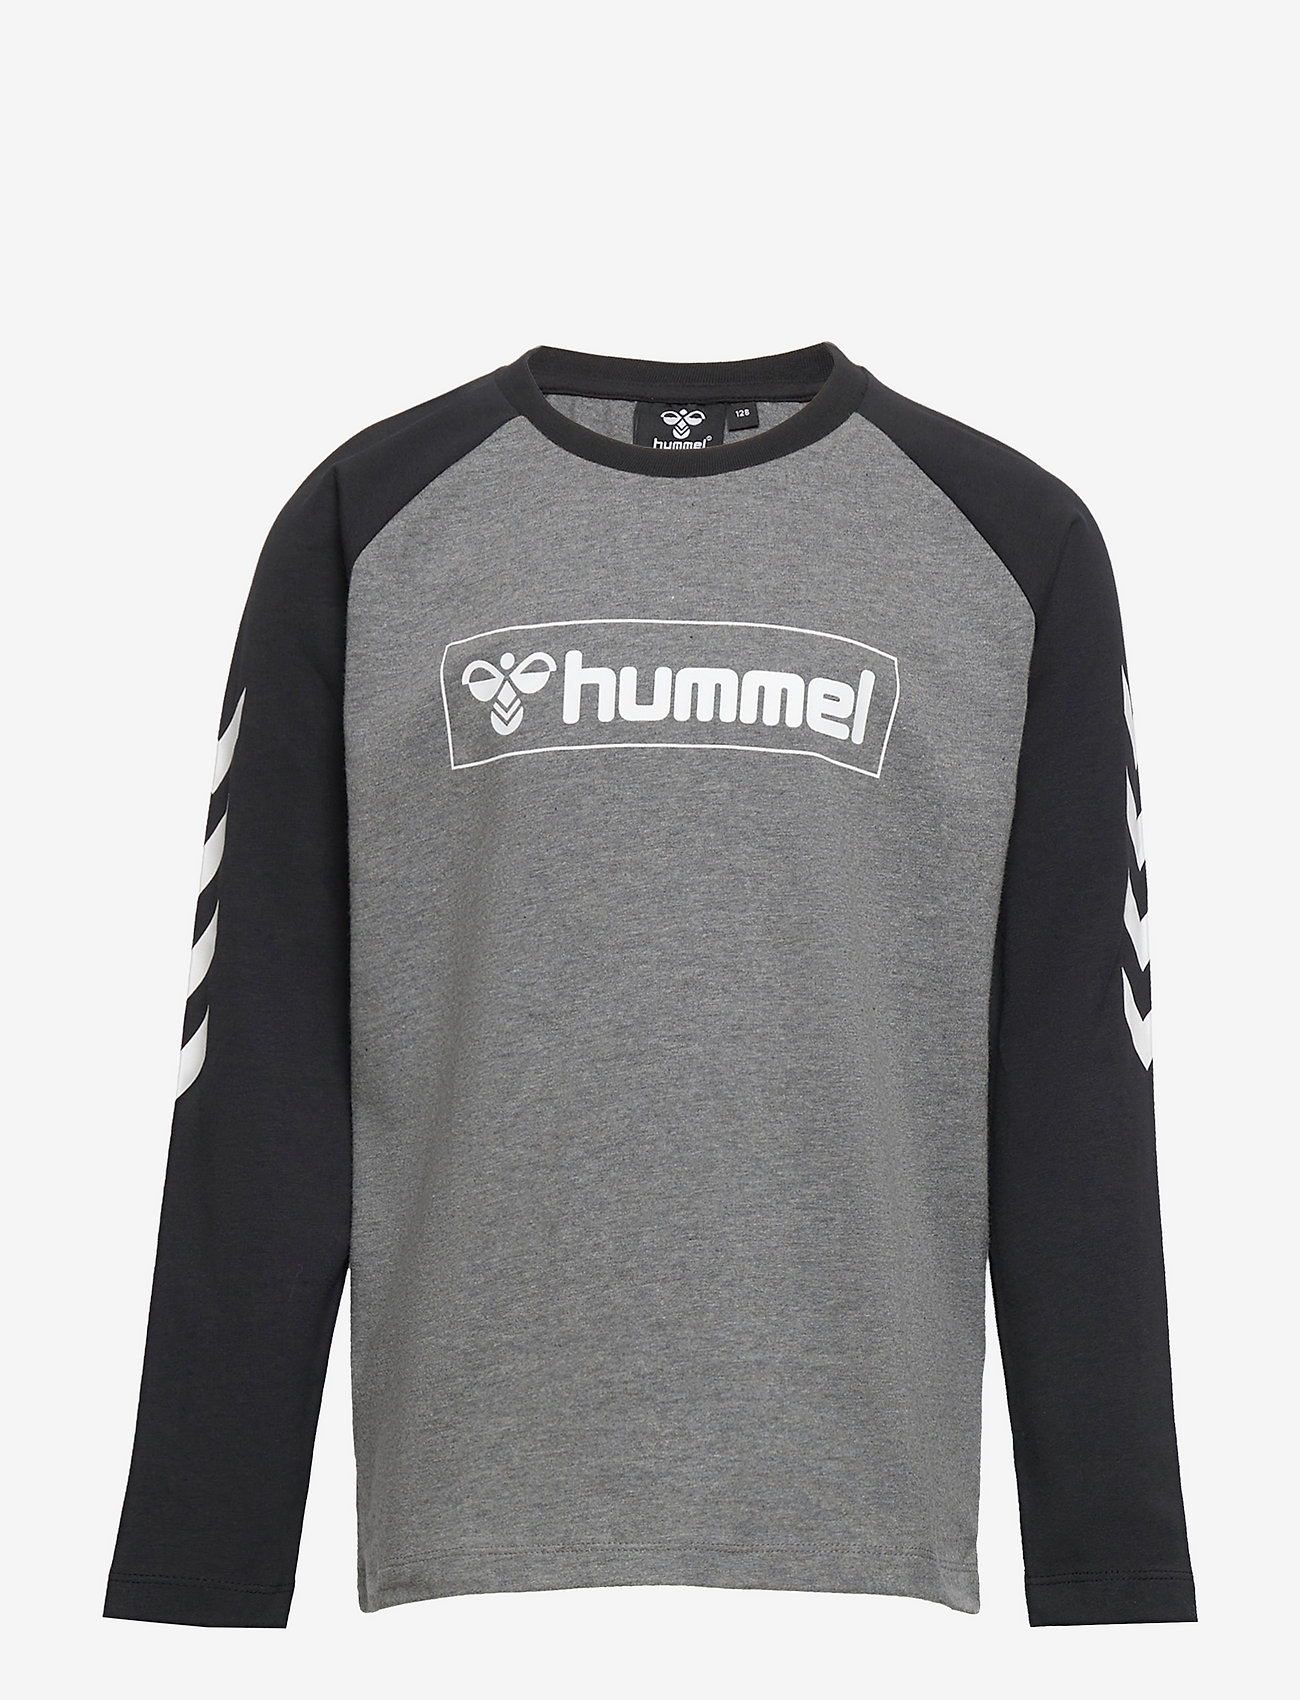 Hummel - hmlBOX T-SHIRT L/S - långärmade - medium melange - 0